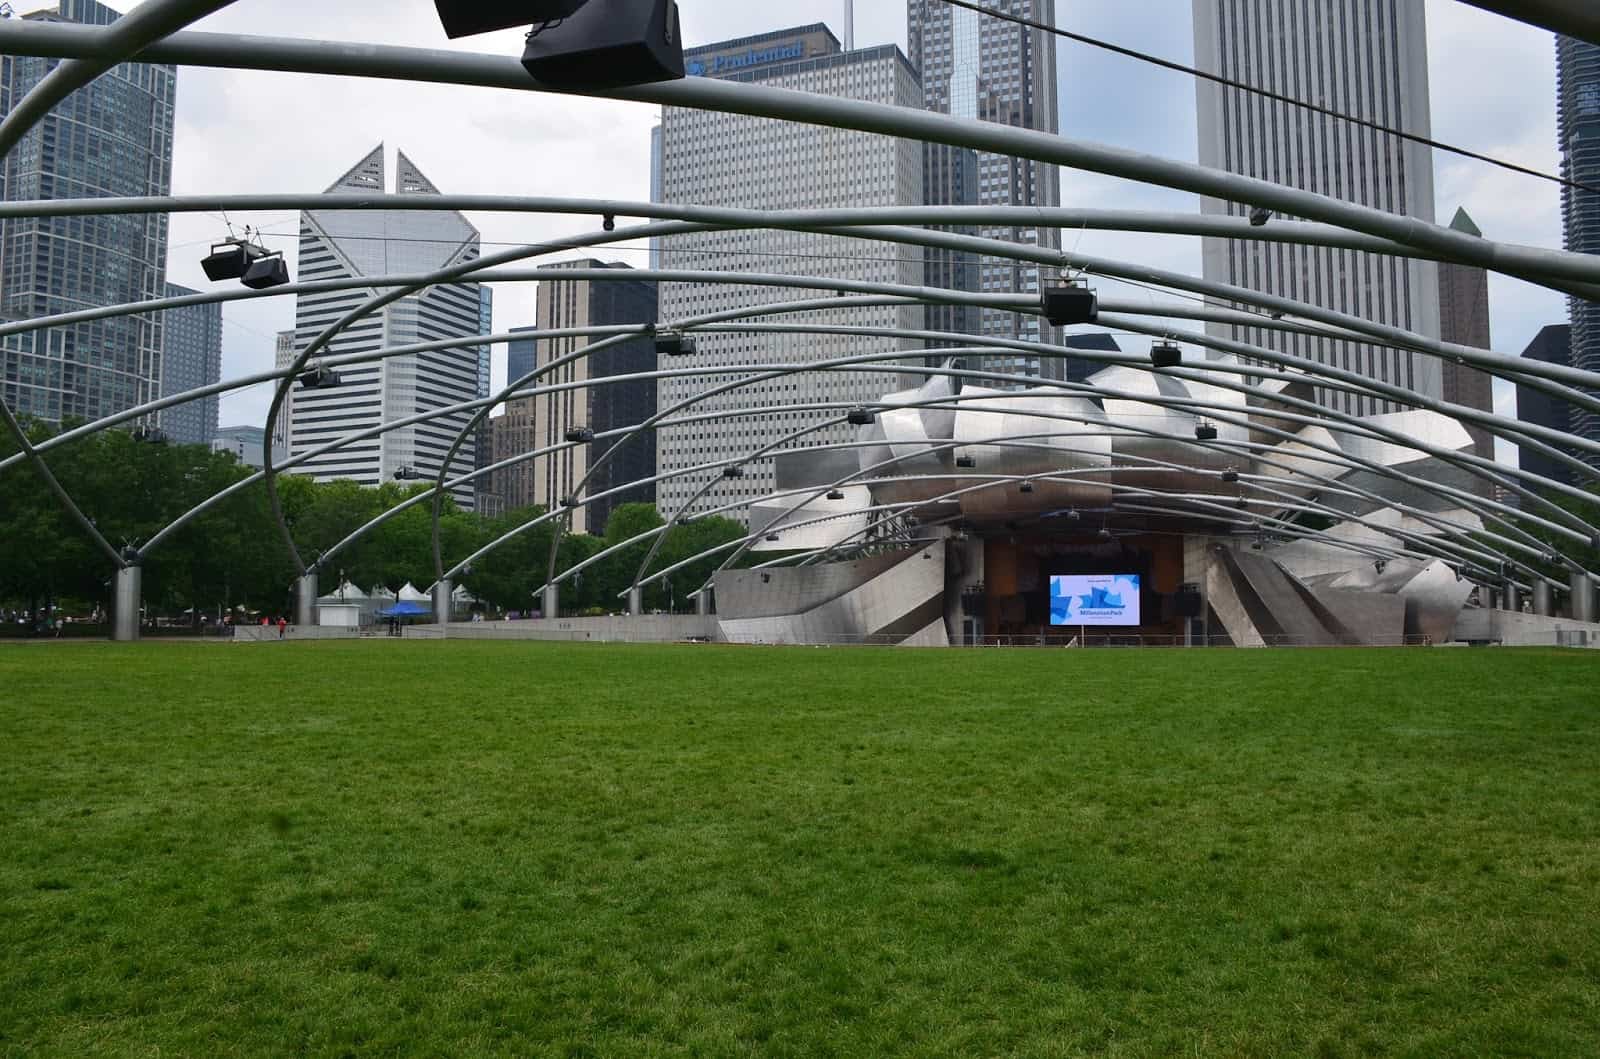 Pritzker Pavilion at Millennium Park in Chicago